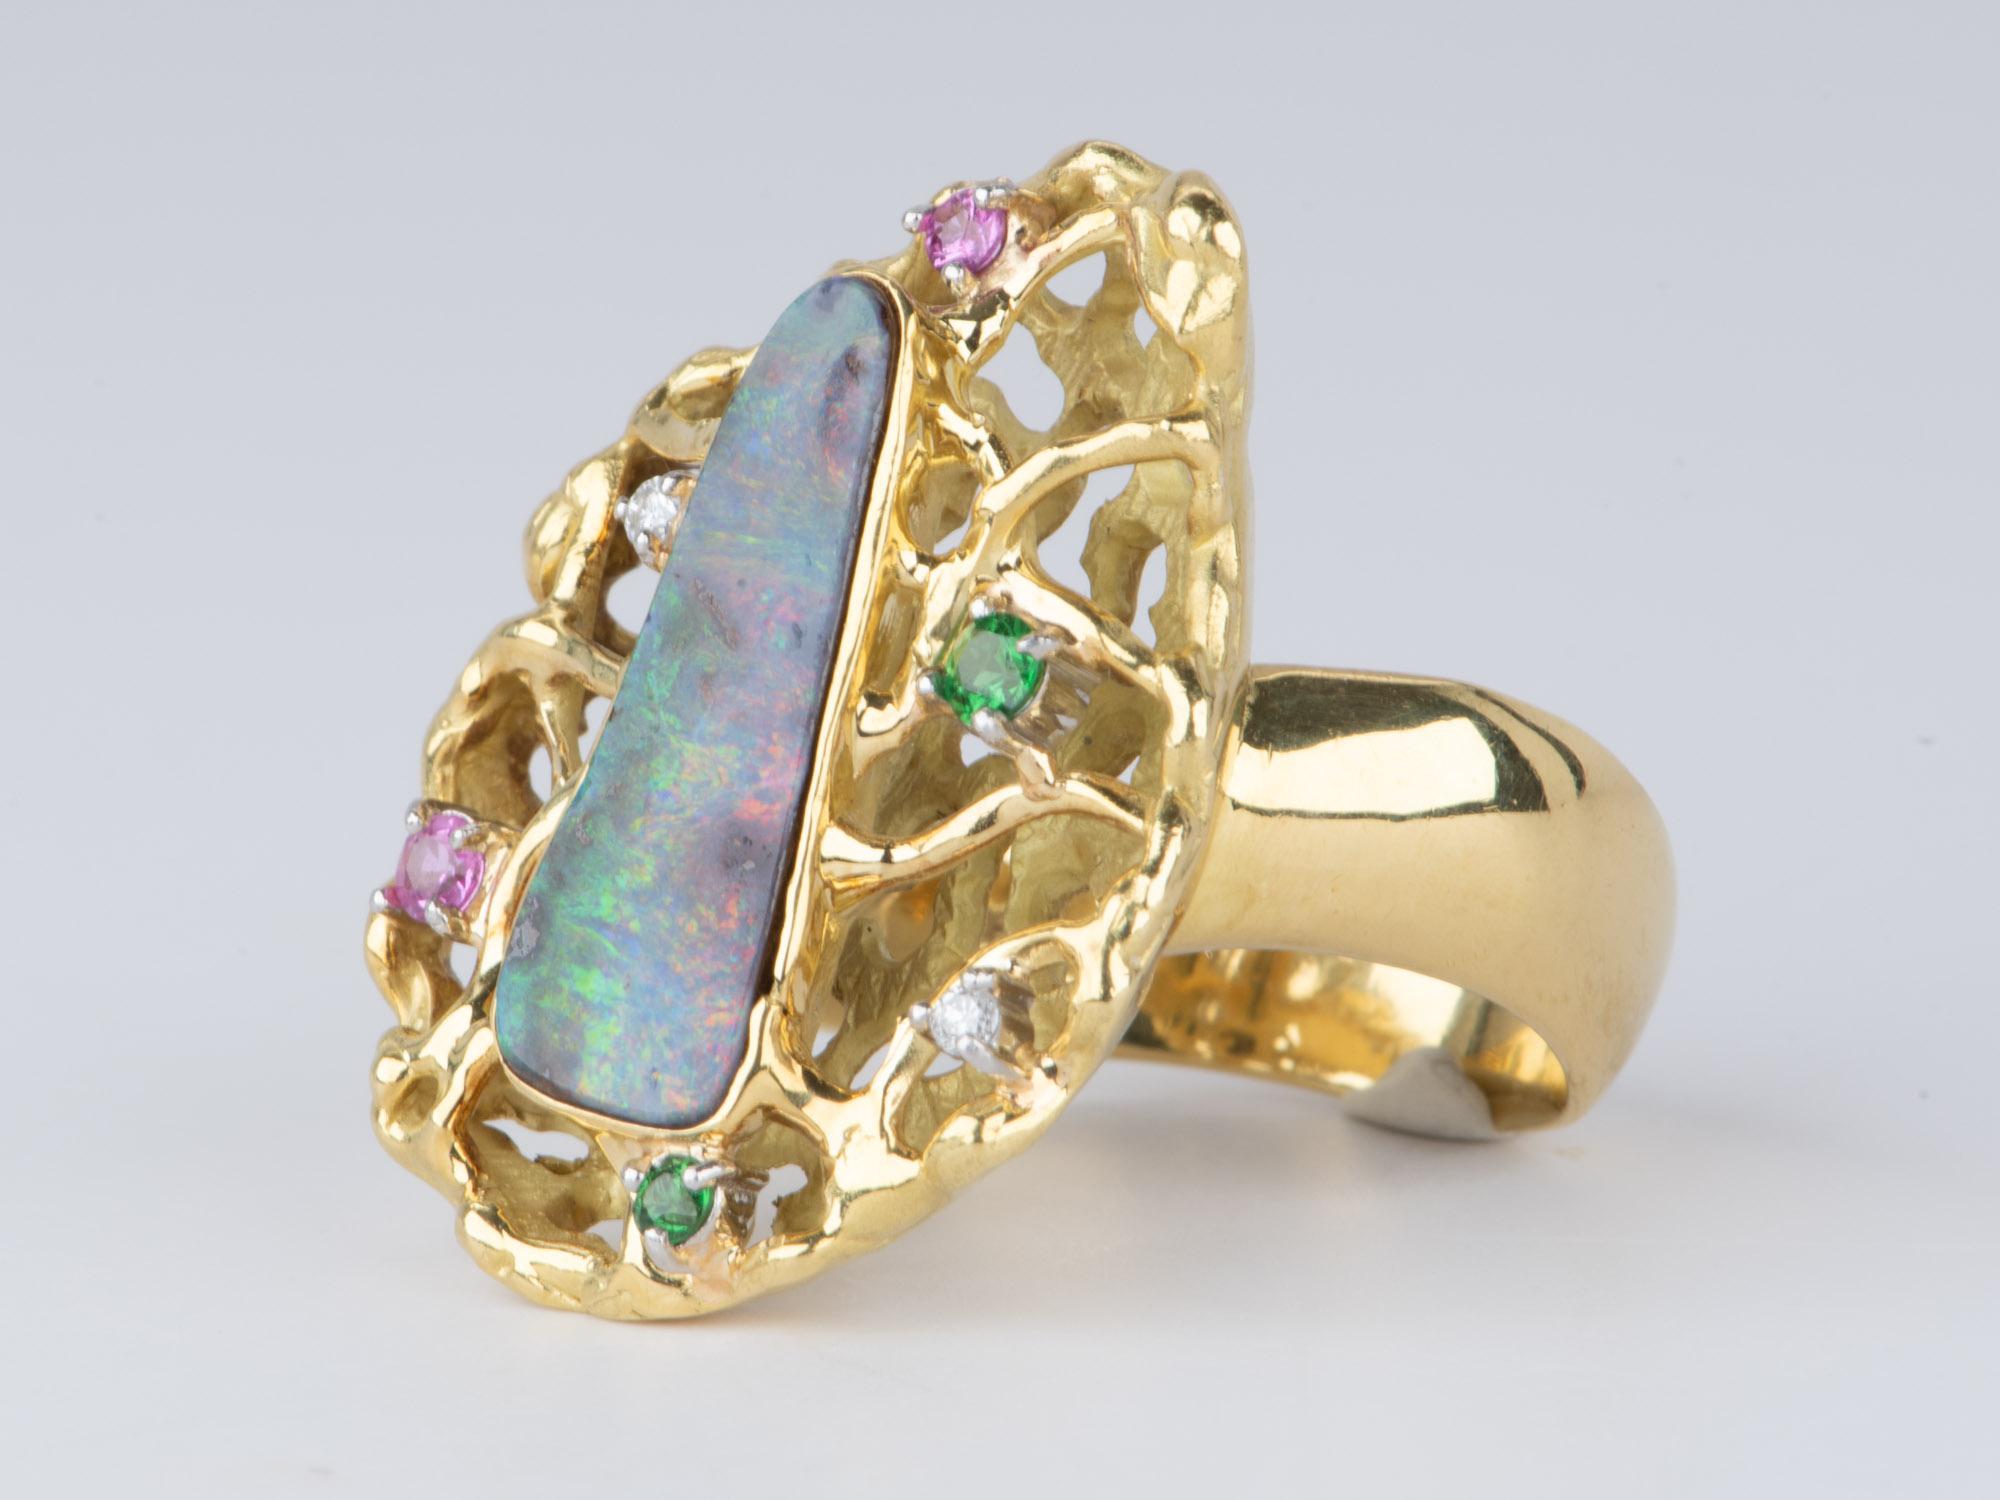 Australian Boulder Opal Modernist Design Statement Ring 18K Gold 14.2g V1112 In New Condition For Sale In Osprey, FL